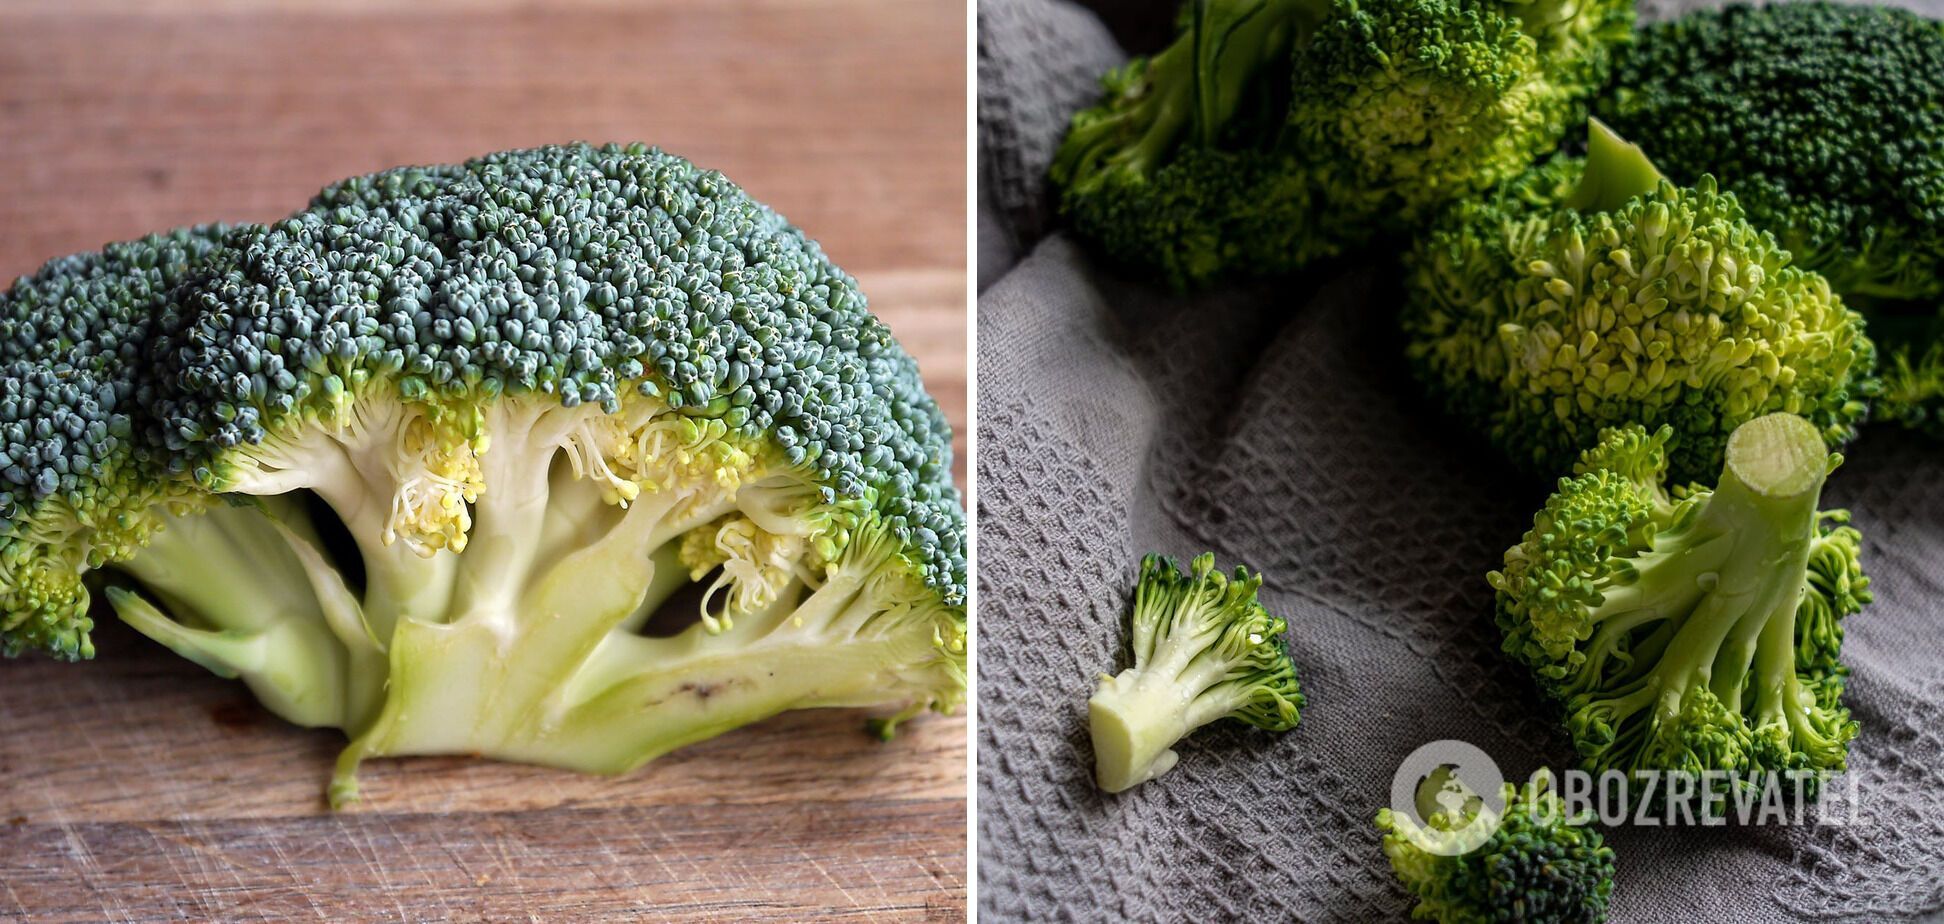 Brokuły do potrawy